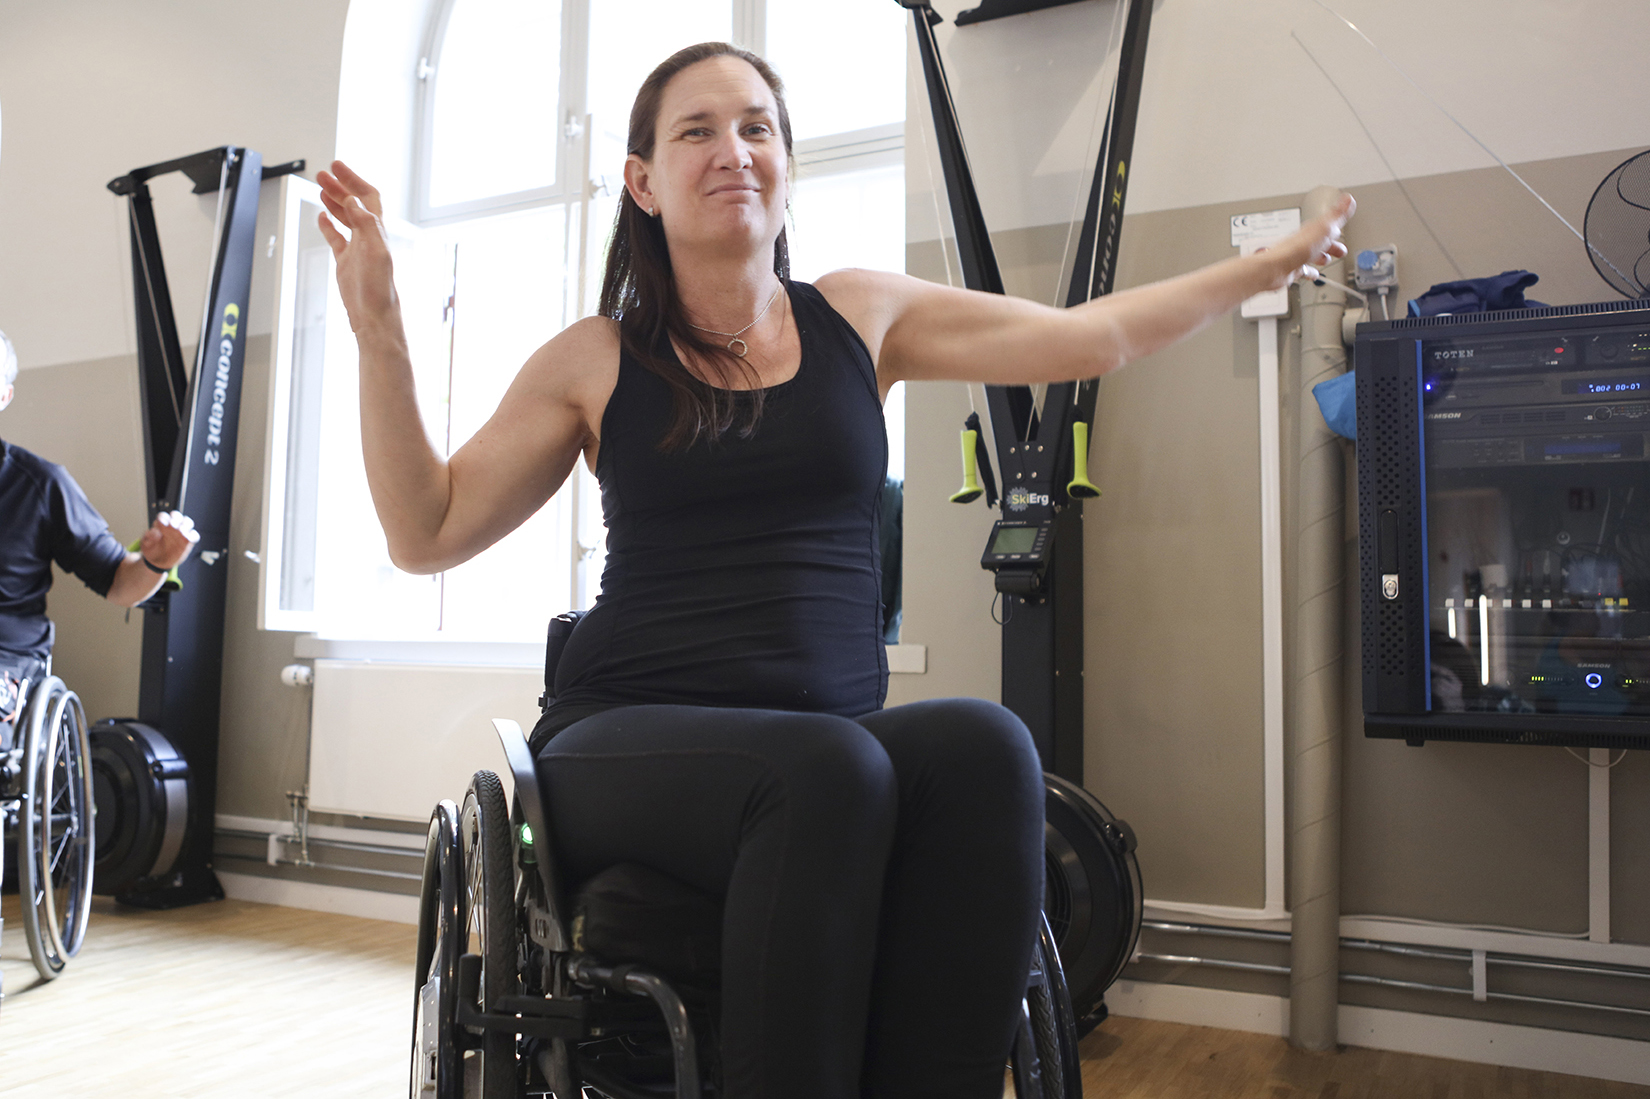 Person i rullstol som tränar på gym. Fotografi.